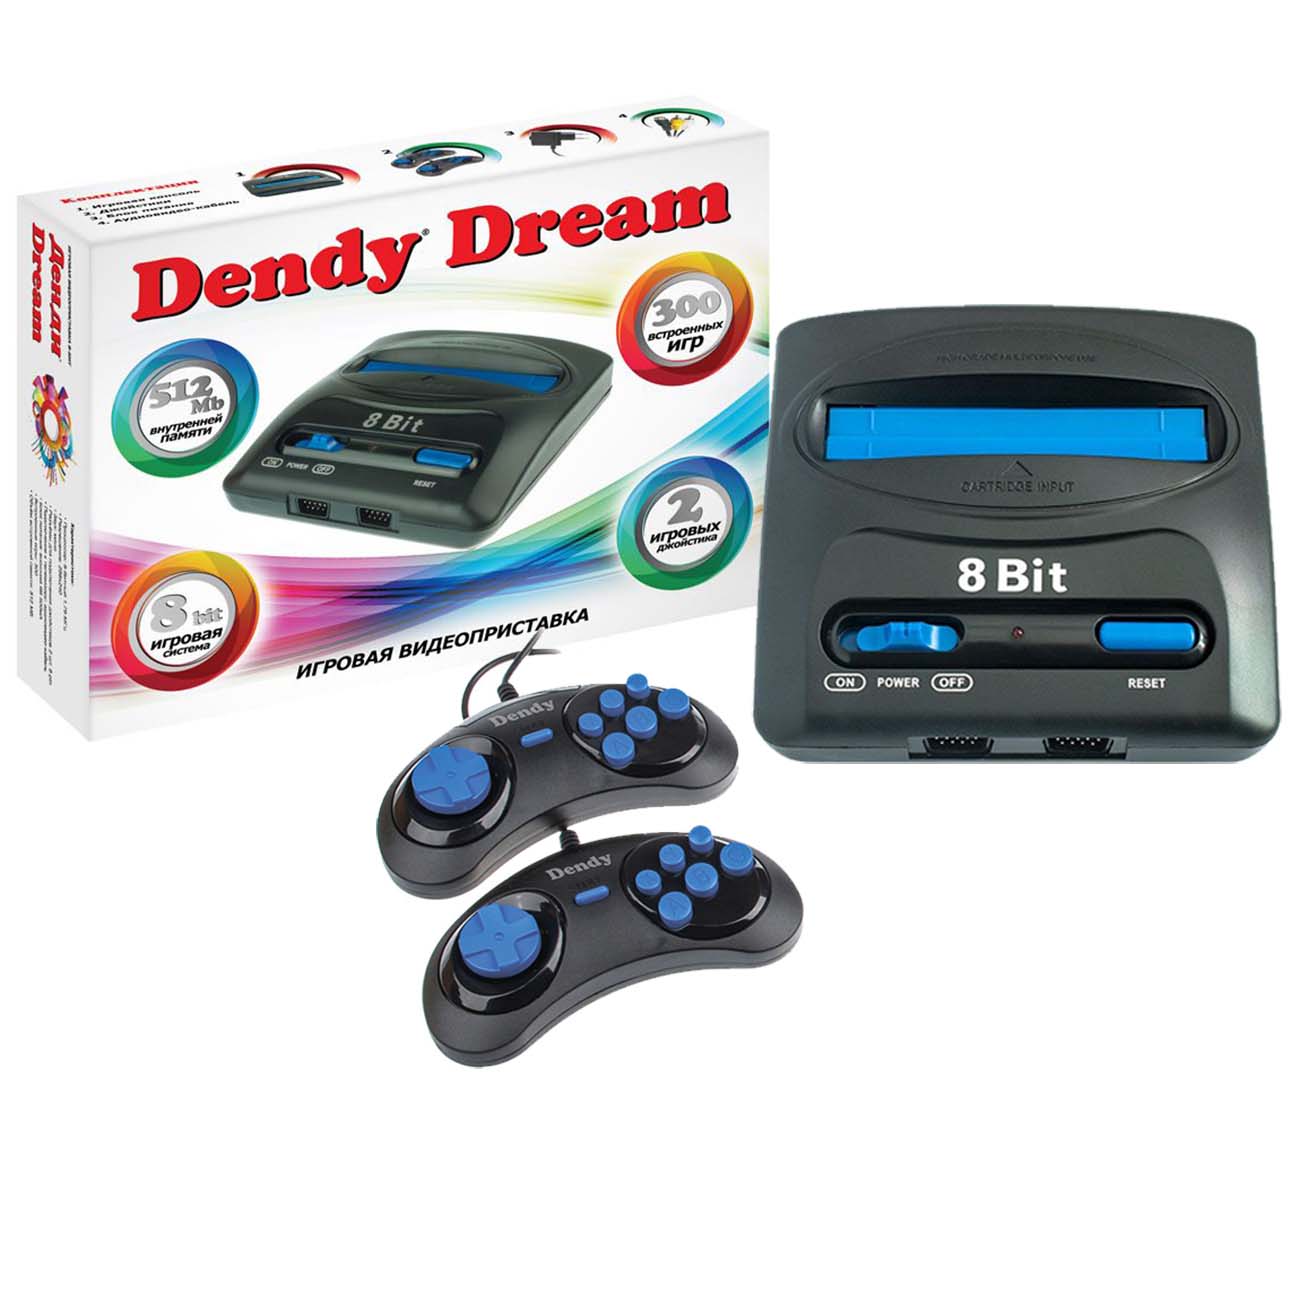 Приставка 300 игр. Игровая приставка Dendy 300 игр. Игровая консоль Dendy Dream - [300 игр]. Игровая приставка Dendy Magistr. Игровая приставка Dendy 8-бит 90.